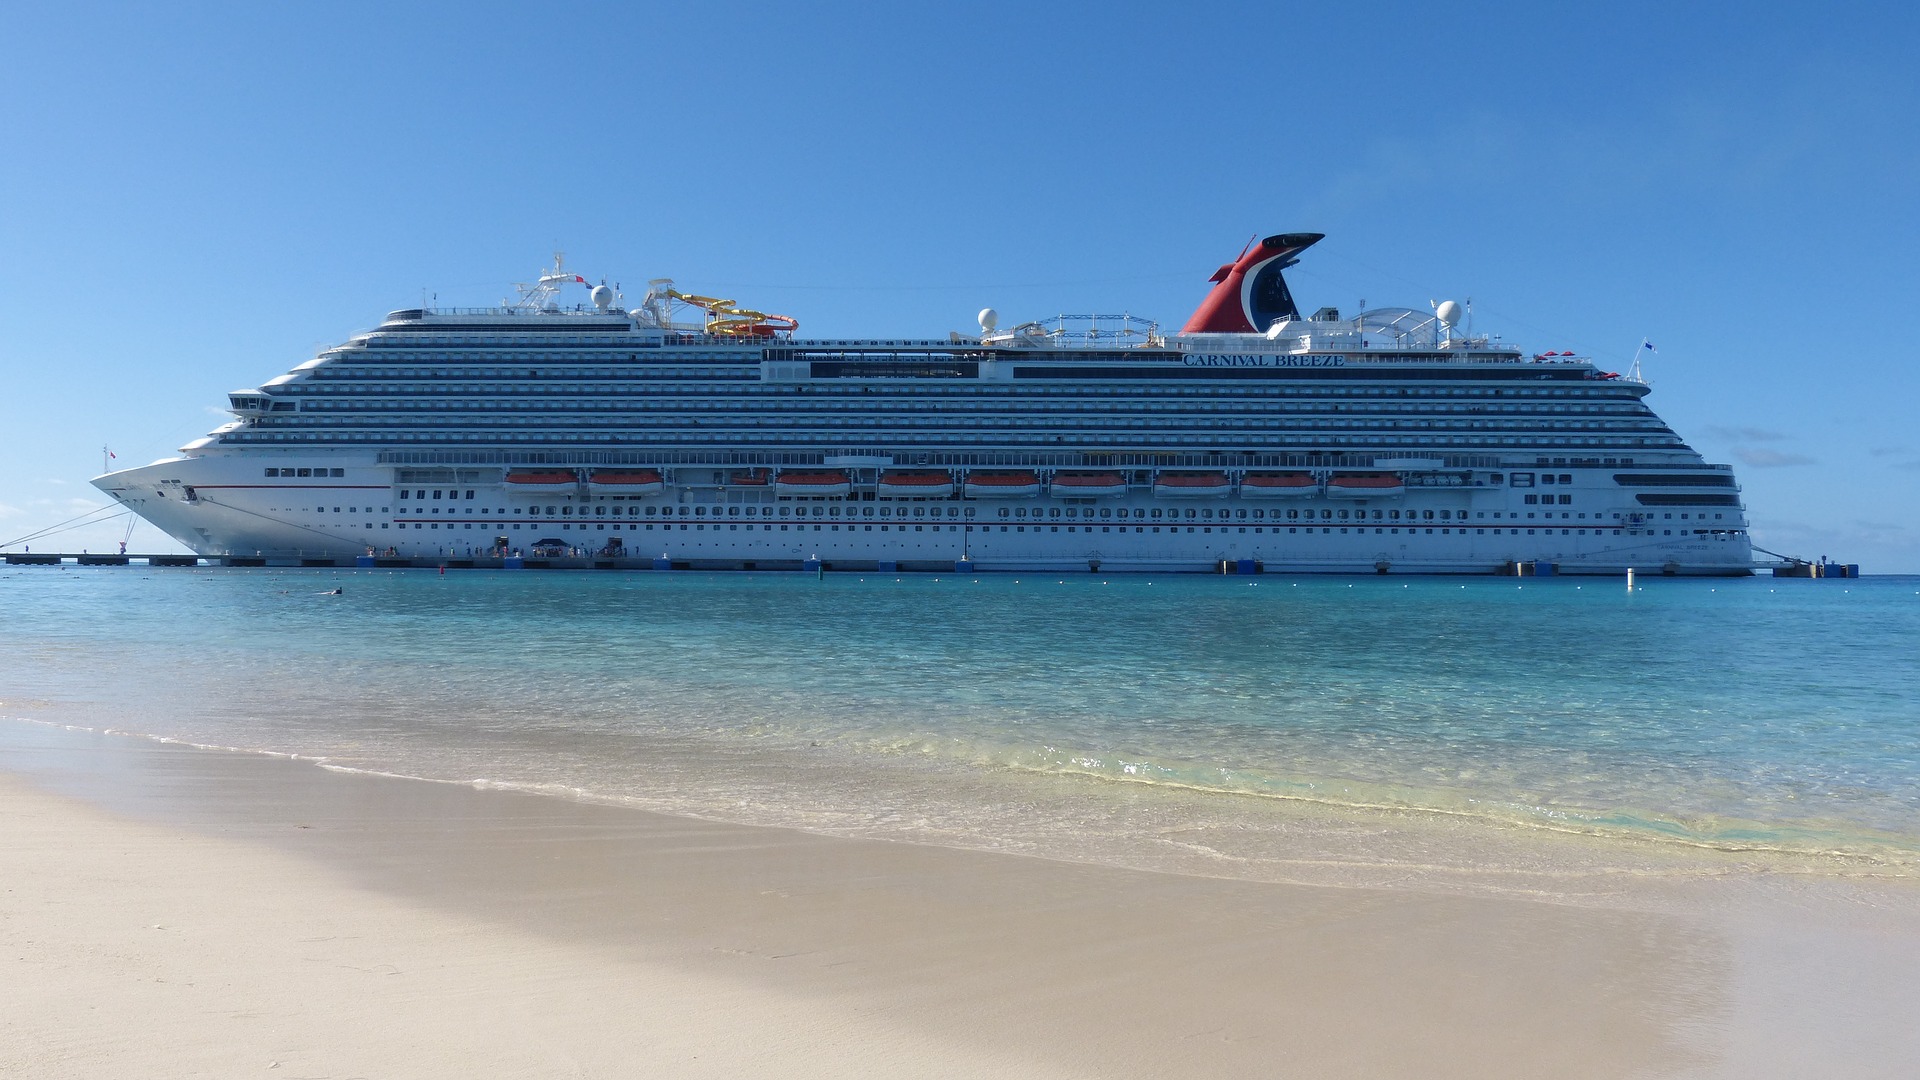 Cruise ship near a beach.